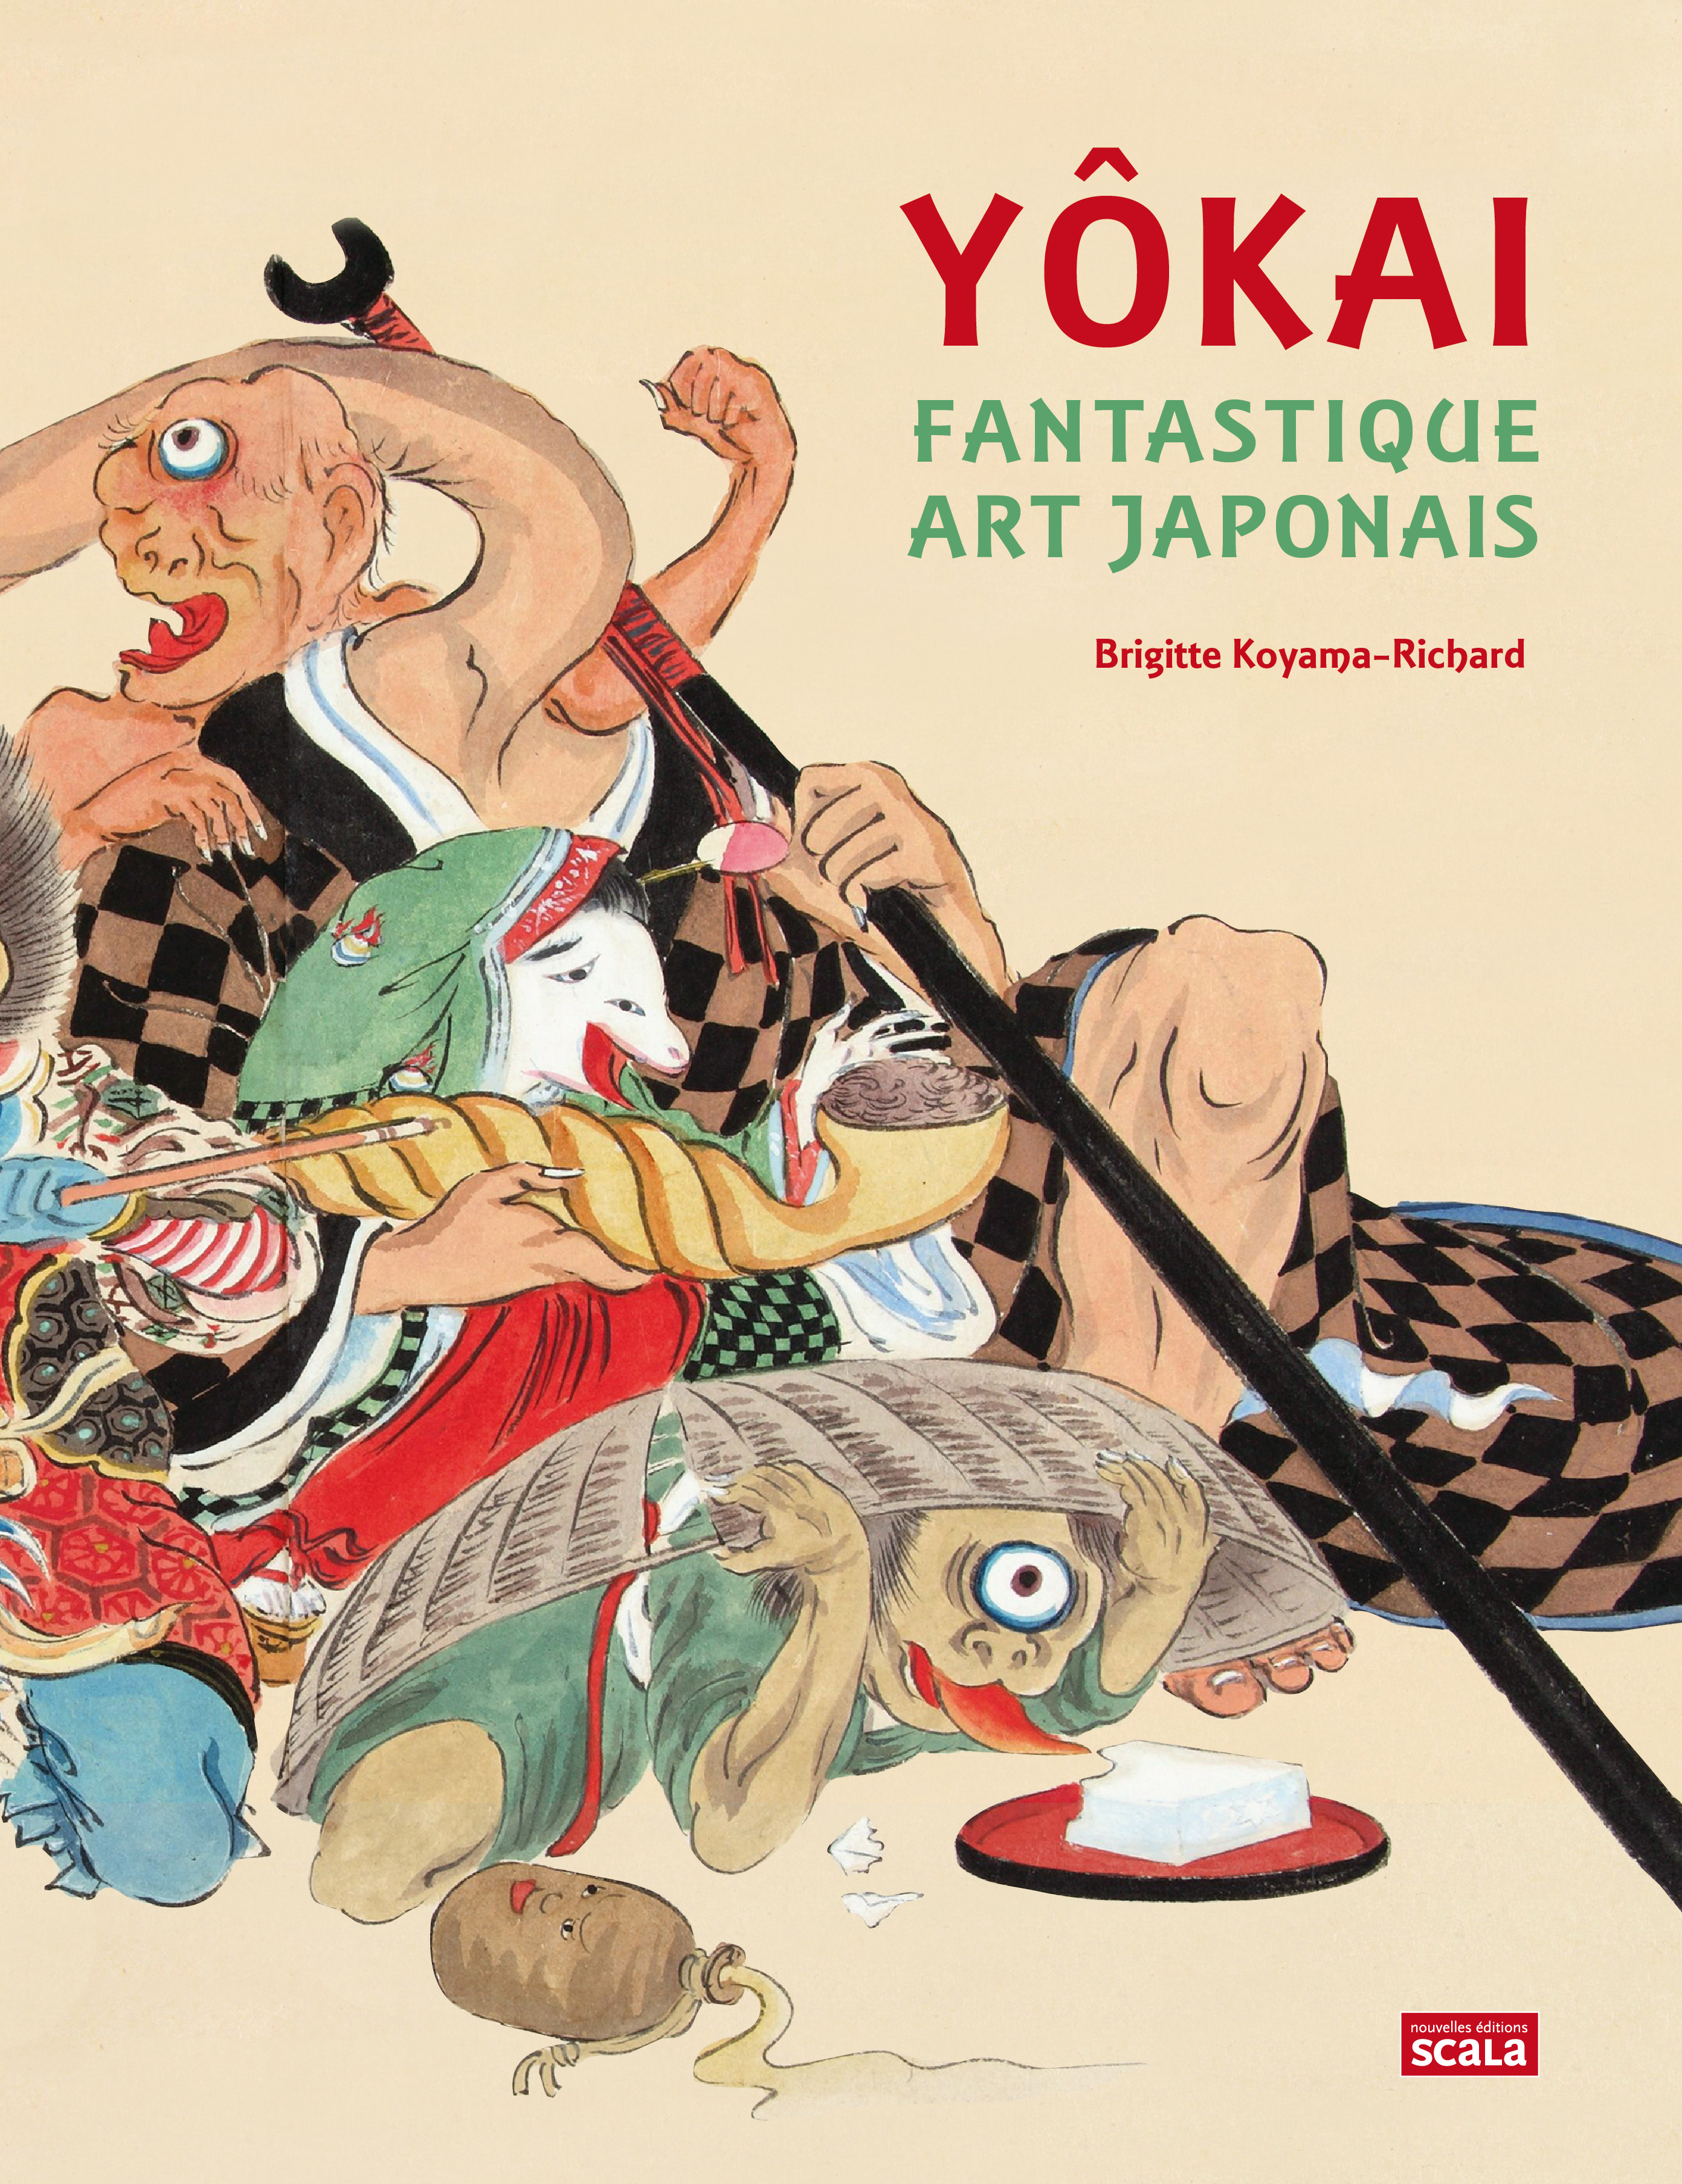 Yôkai – Fantastique art japonais de Brigitte Koyama-Richard est paru aux nouvelles éditions Scala.